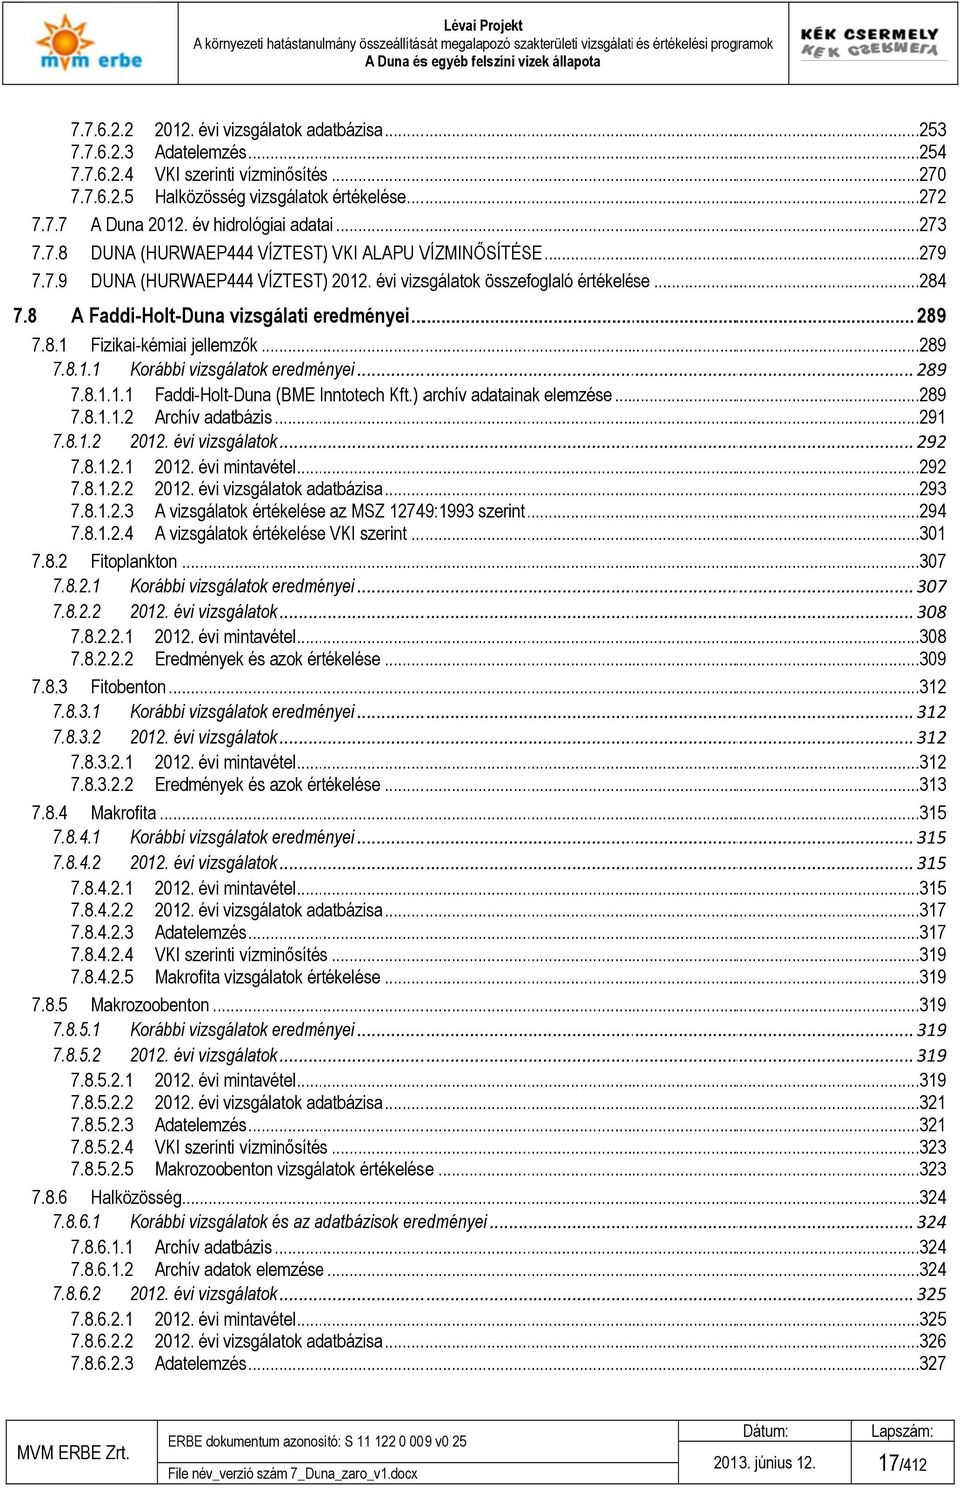 8 A Faddi-Holt-Duna vizsgálati eredményei... 289 7.8. Fizikai-kémiai jellemzők...289 7.8.. Korábbi vizsgálatok eredményei... 289 7.8... Faddi-Holt-Duna (BME Inntotech Kft.) archív adatainak elemzése.